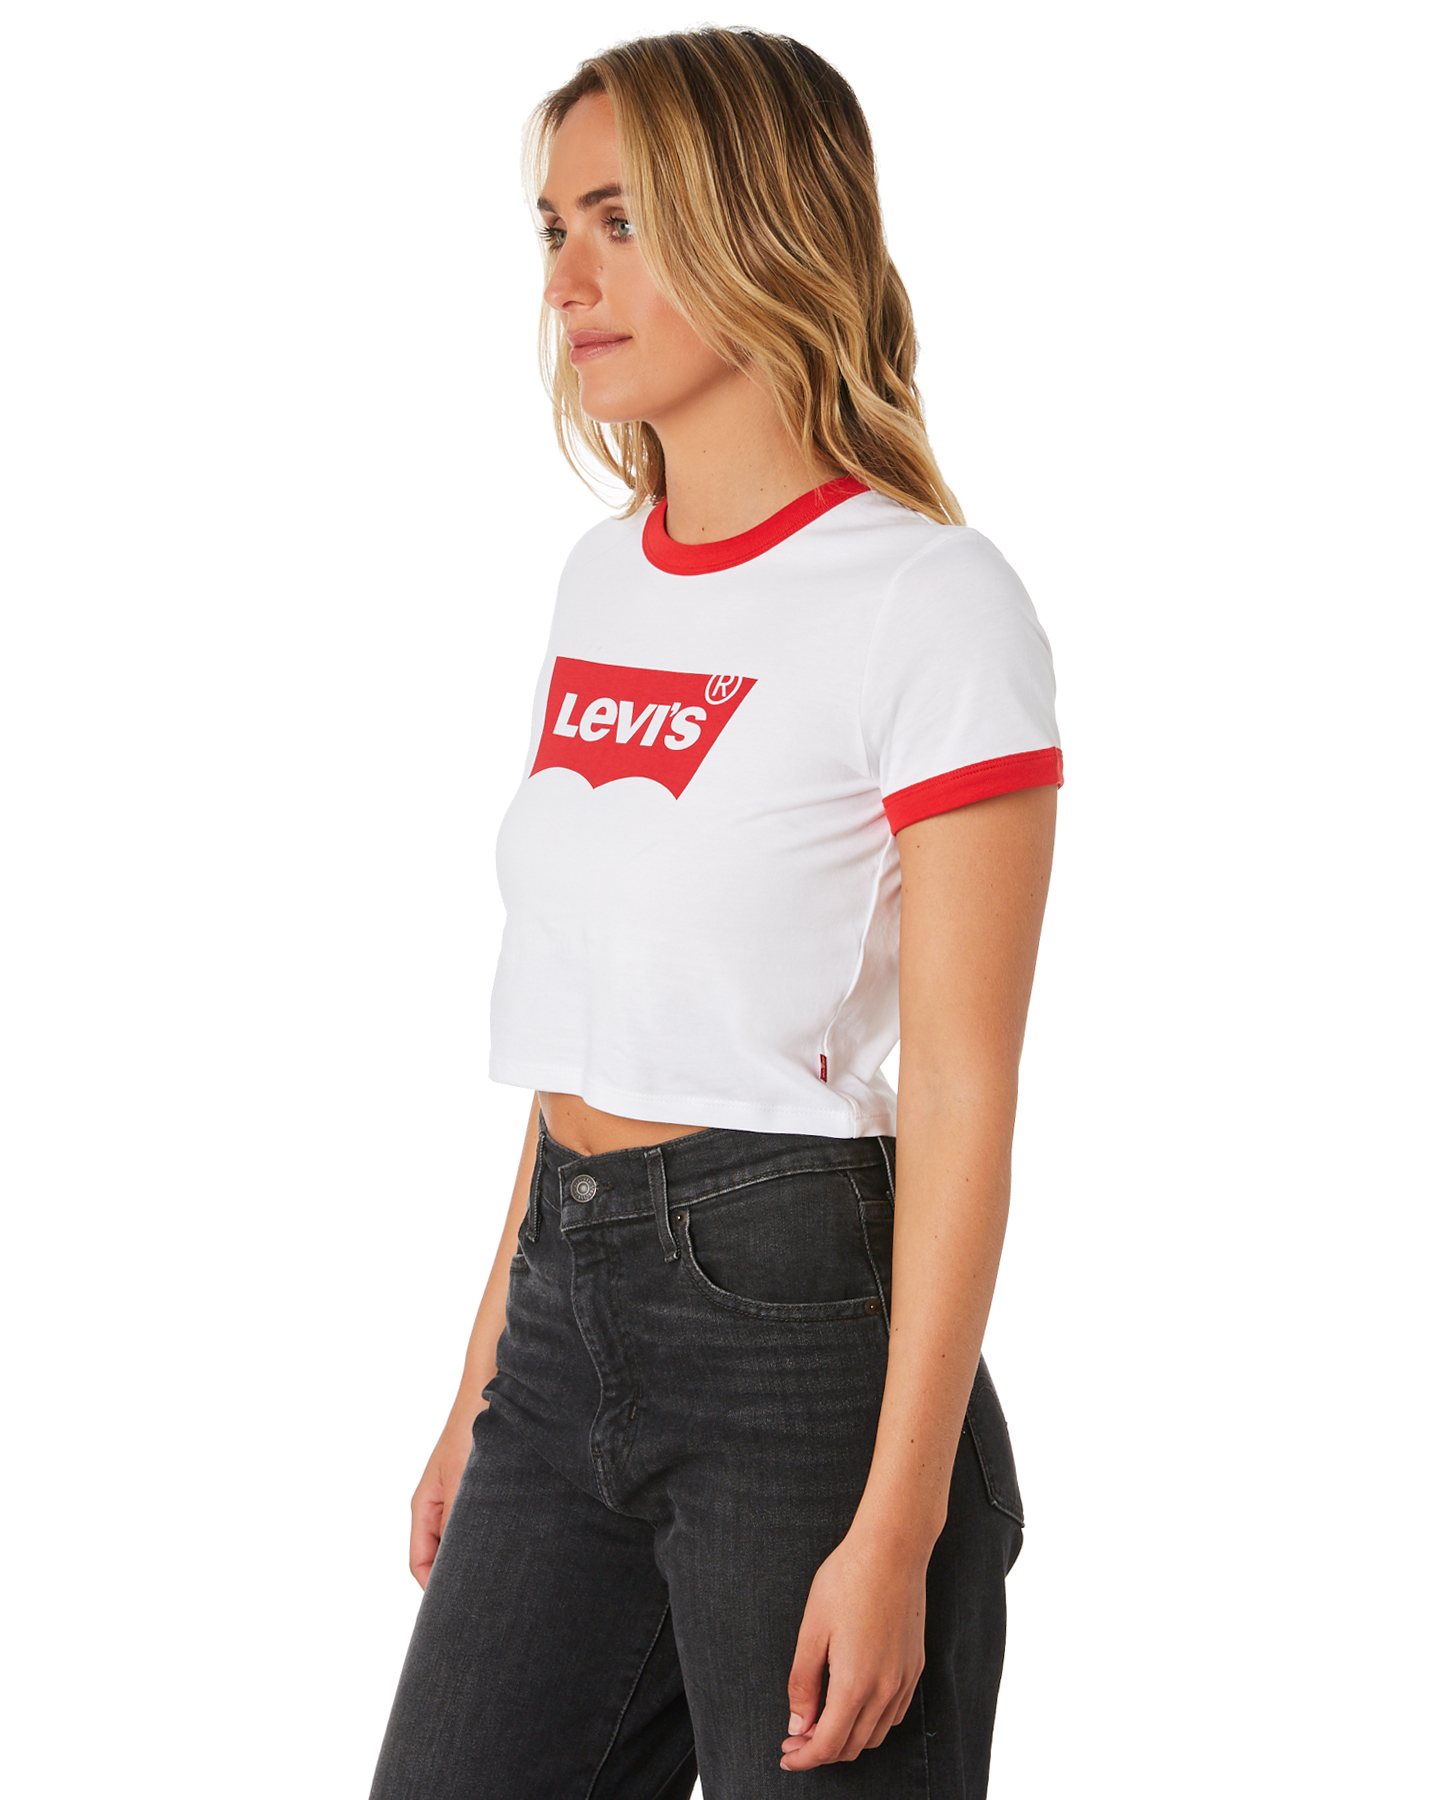 levis crop shirt